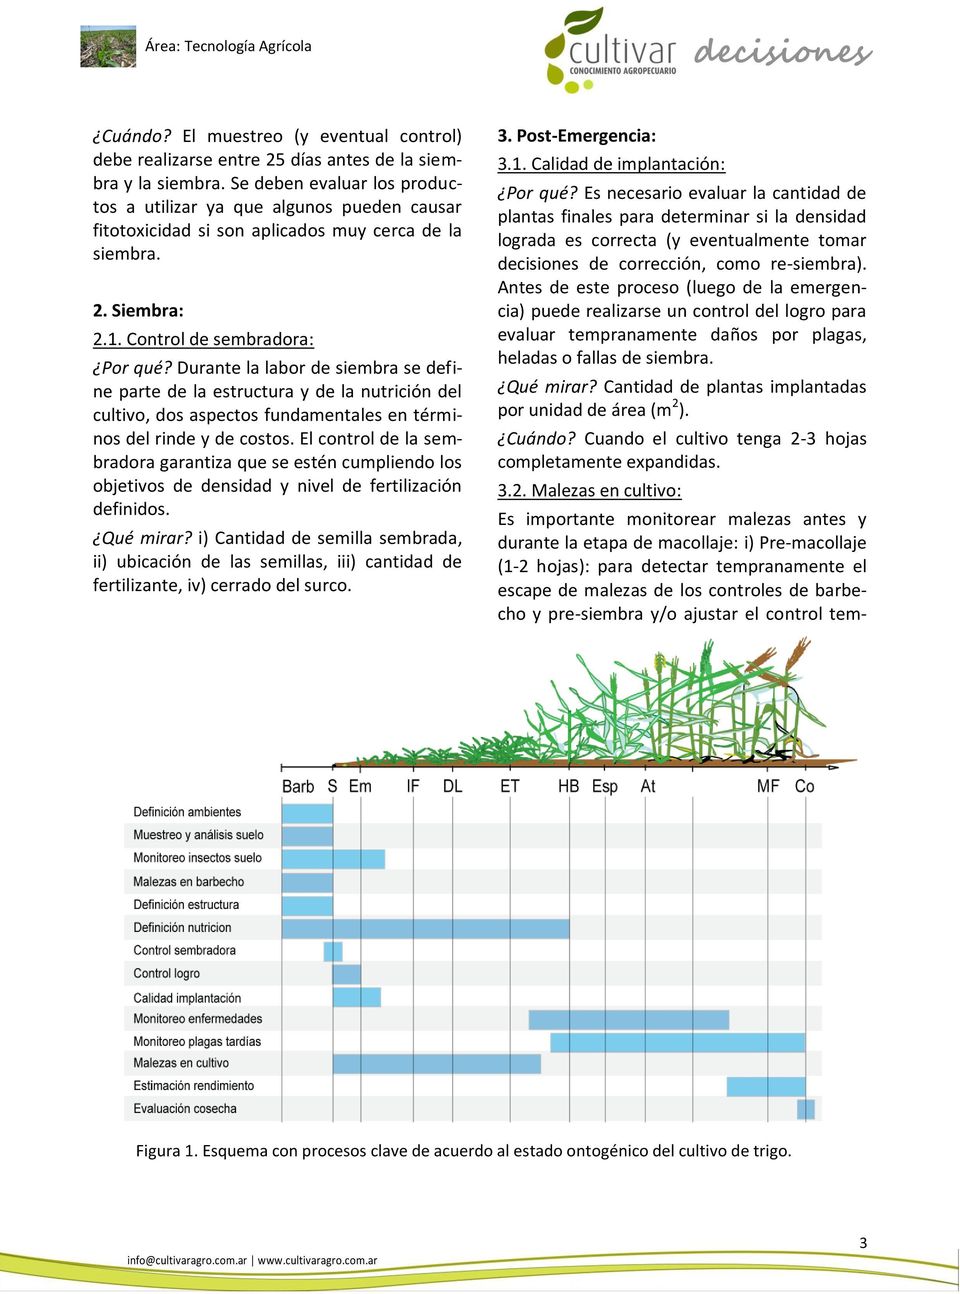 Durante la labor de siembra se define parte de la estructura y de la nutrición del cultivo, dos aspectos fundamentales en términos del rinde y de costos.